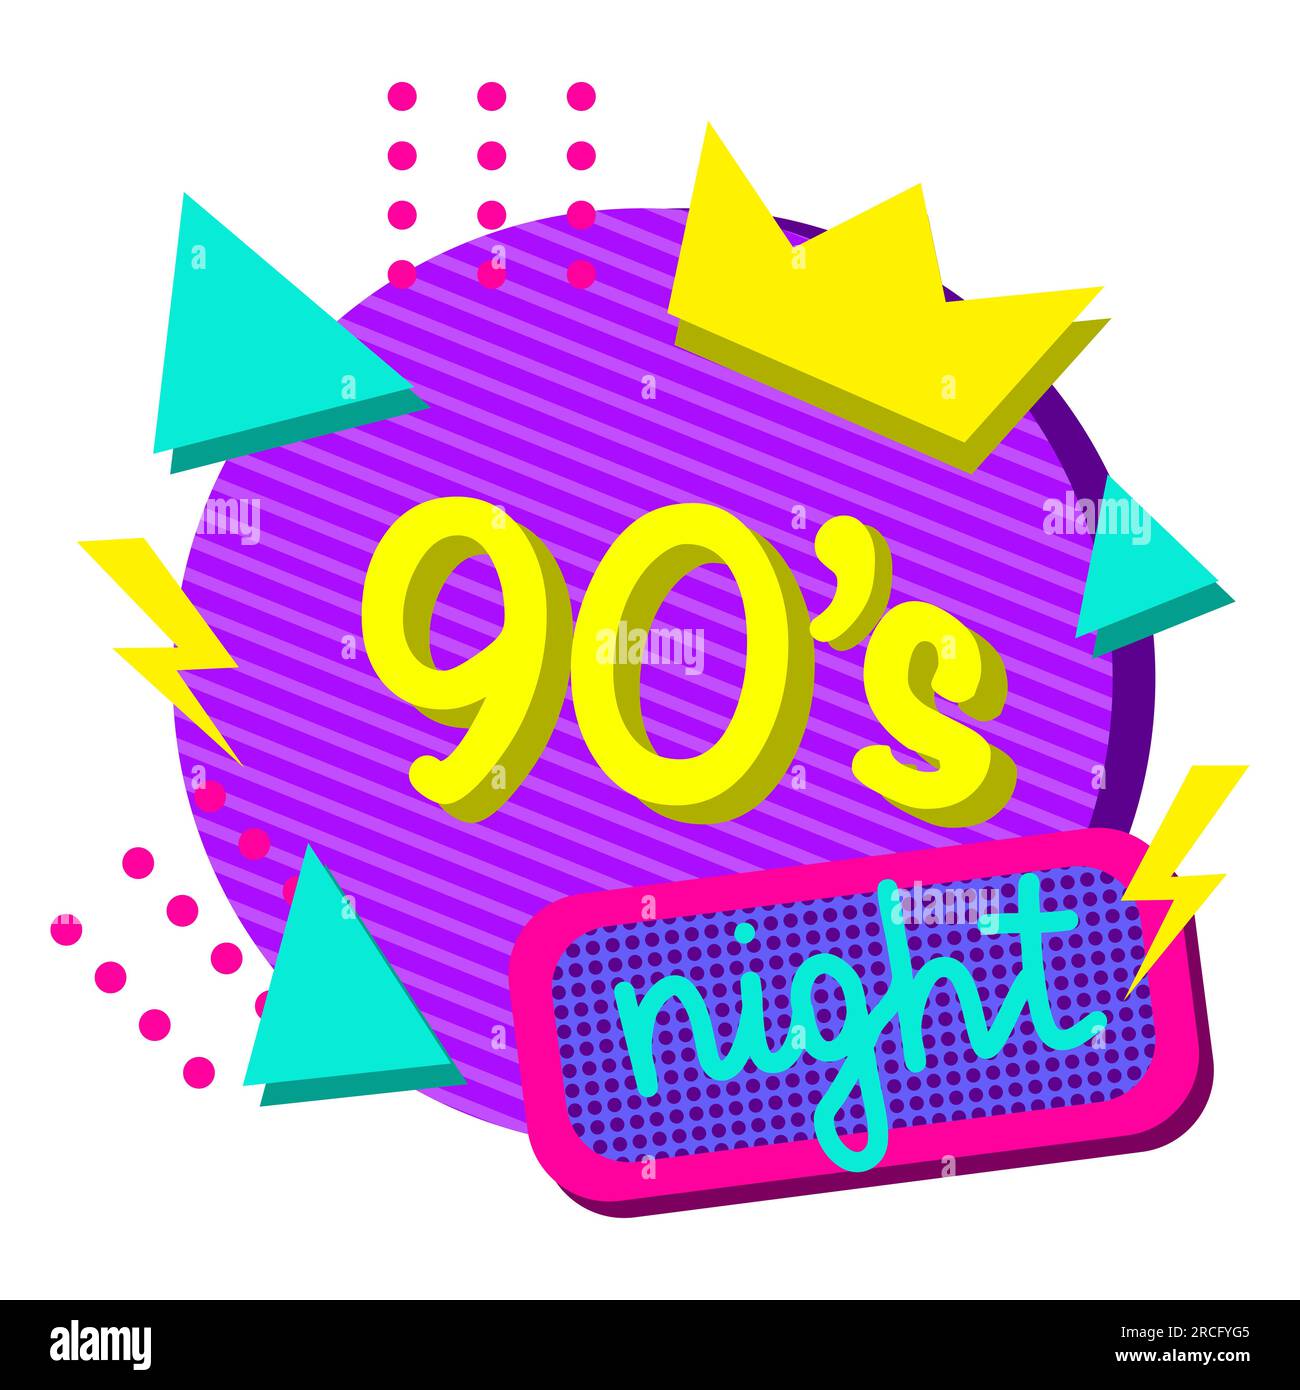 Farbenfrohes Poster mit Schriftzug für 90s Nacht und abstrakten geometrischen Formen, Vektorgrafik für Einladungen zu Veranstaltungen oder Partys, Design im Stil der 1990er Jahre Stock Vektor